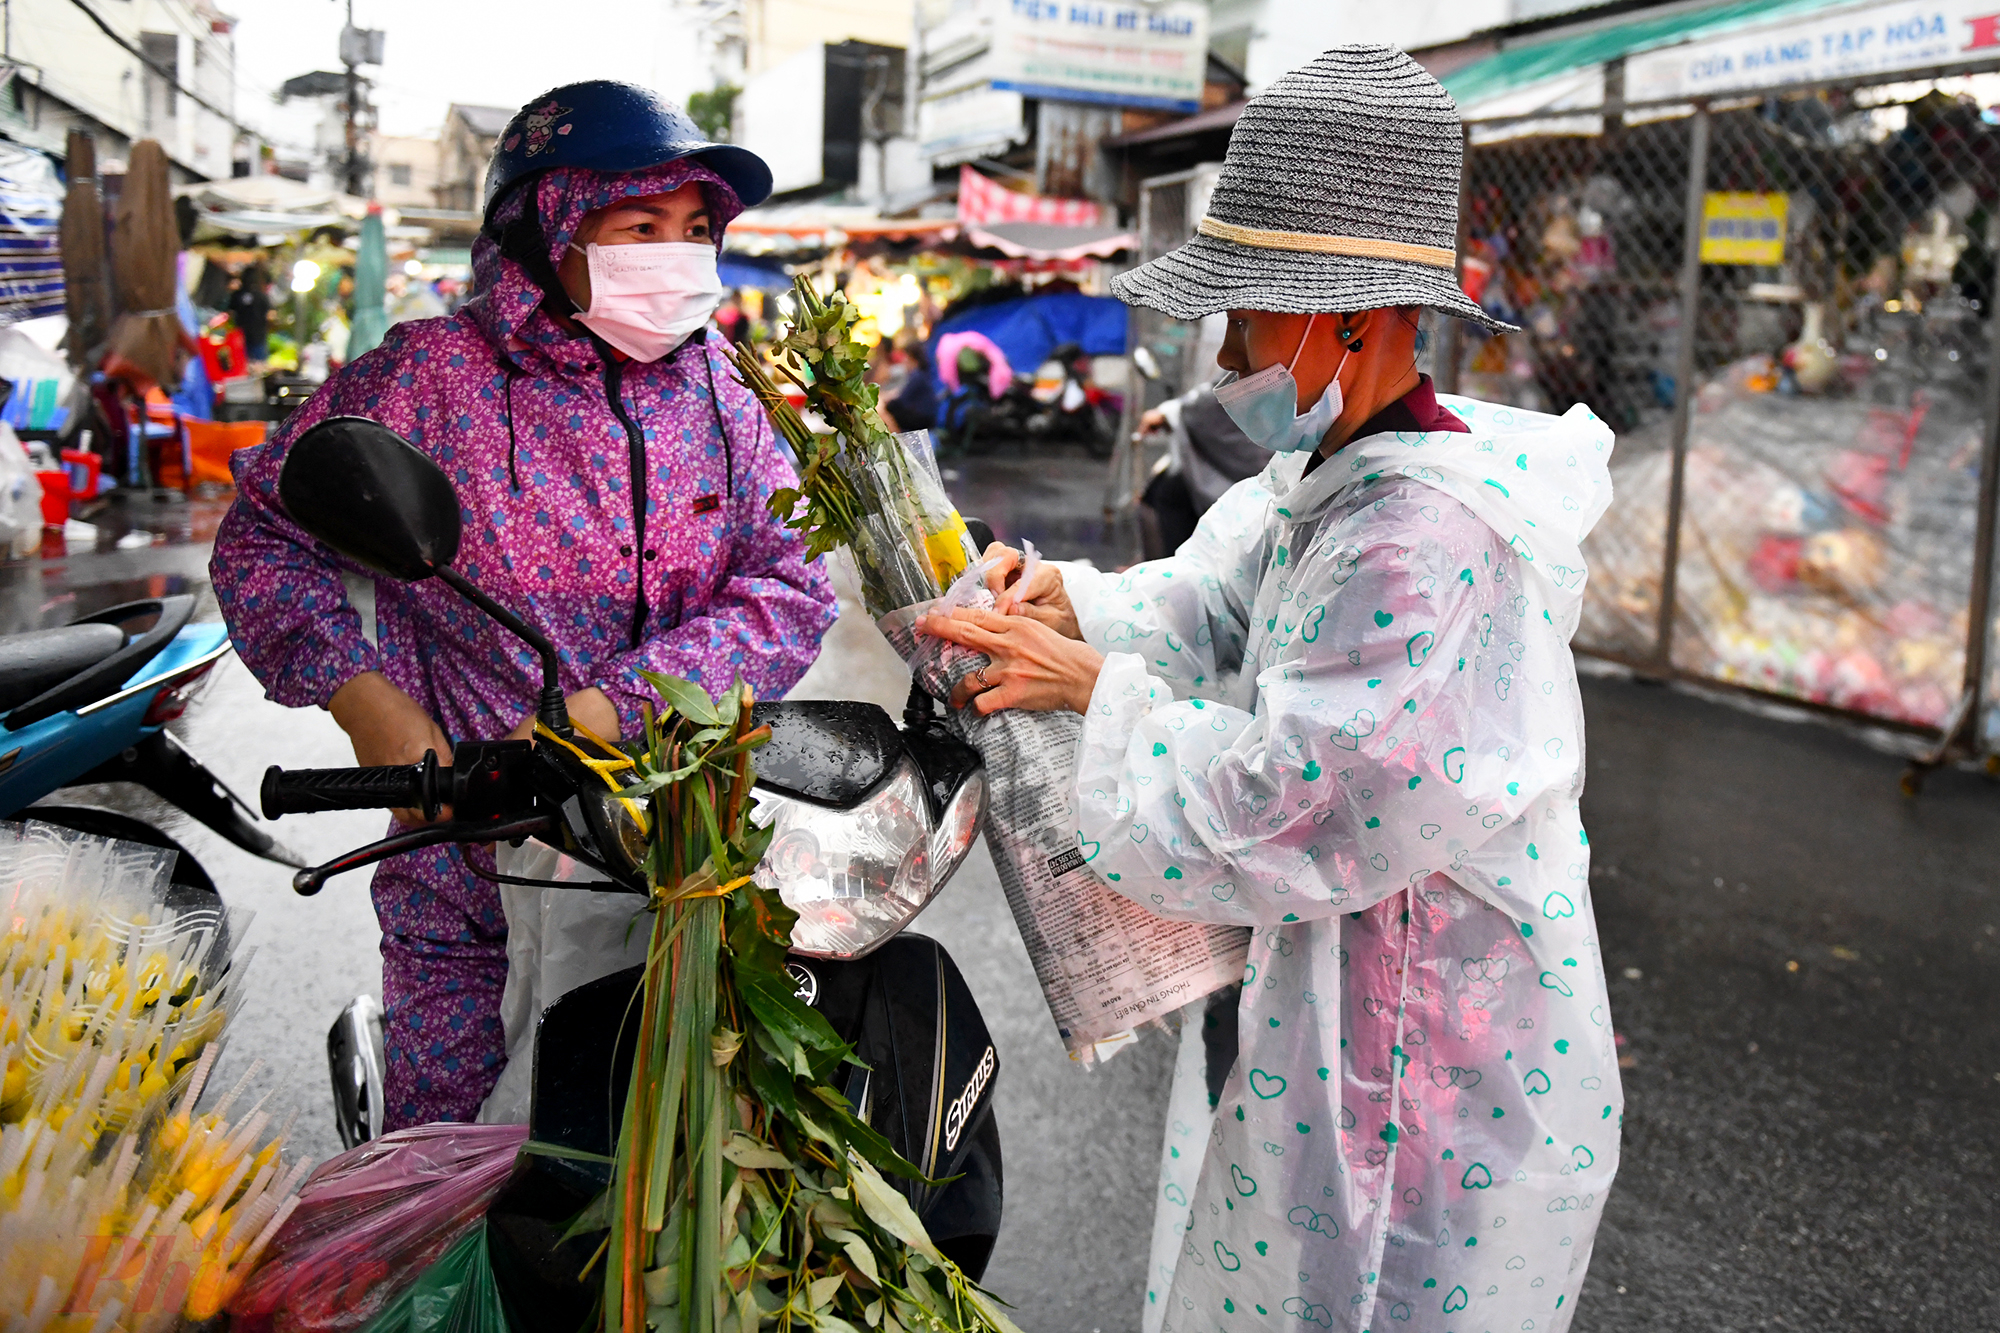 Nắm lá xông, hoa cúng là những thứ không thể thiếu trong ngày Tết Đoan Ngọ. Các tiểu thương ở chợ thường nhập hàng từ miền Tây lên, bán với giá khoảng 10 nghìn đồng/bó. 